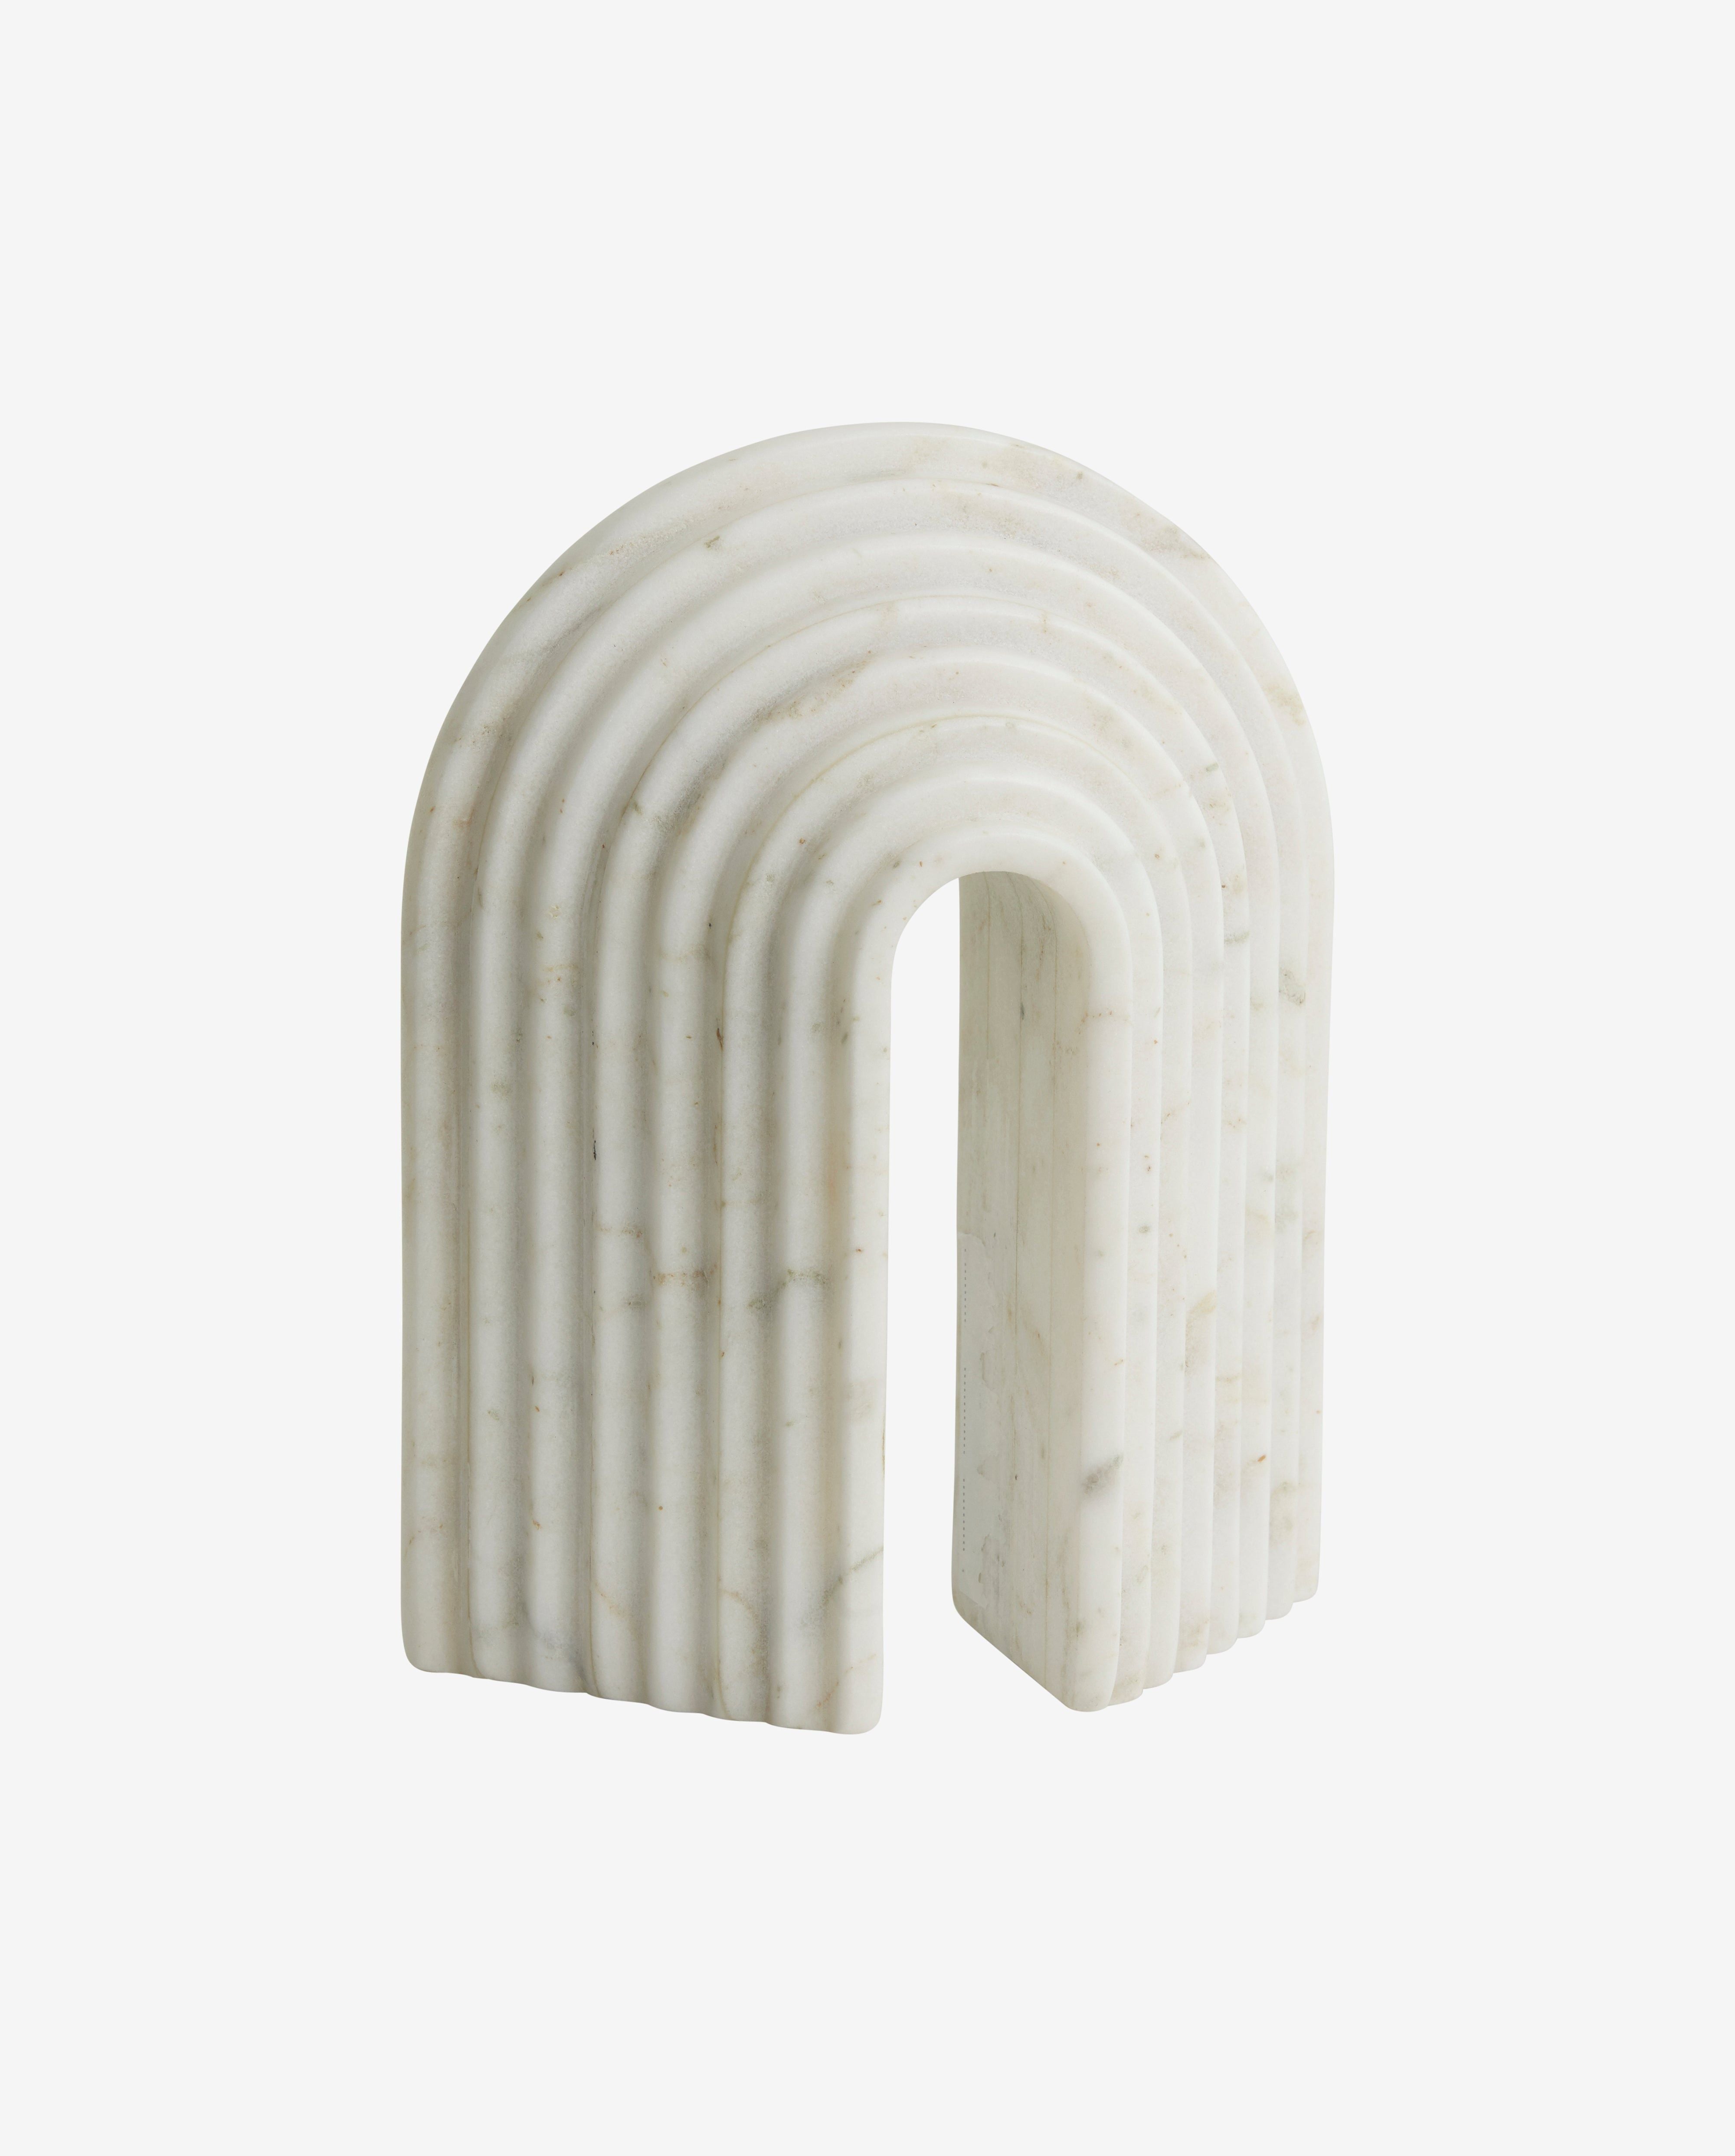 Die Buchstütze 'FERRO' aus weißem Marmor ist nicht nur funktional, sondern auch eine dekorative Skulptur.